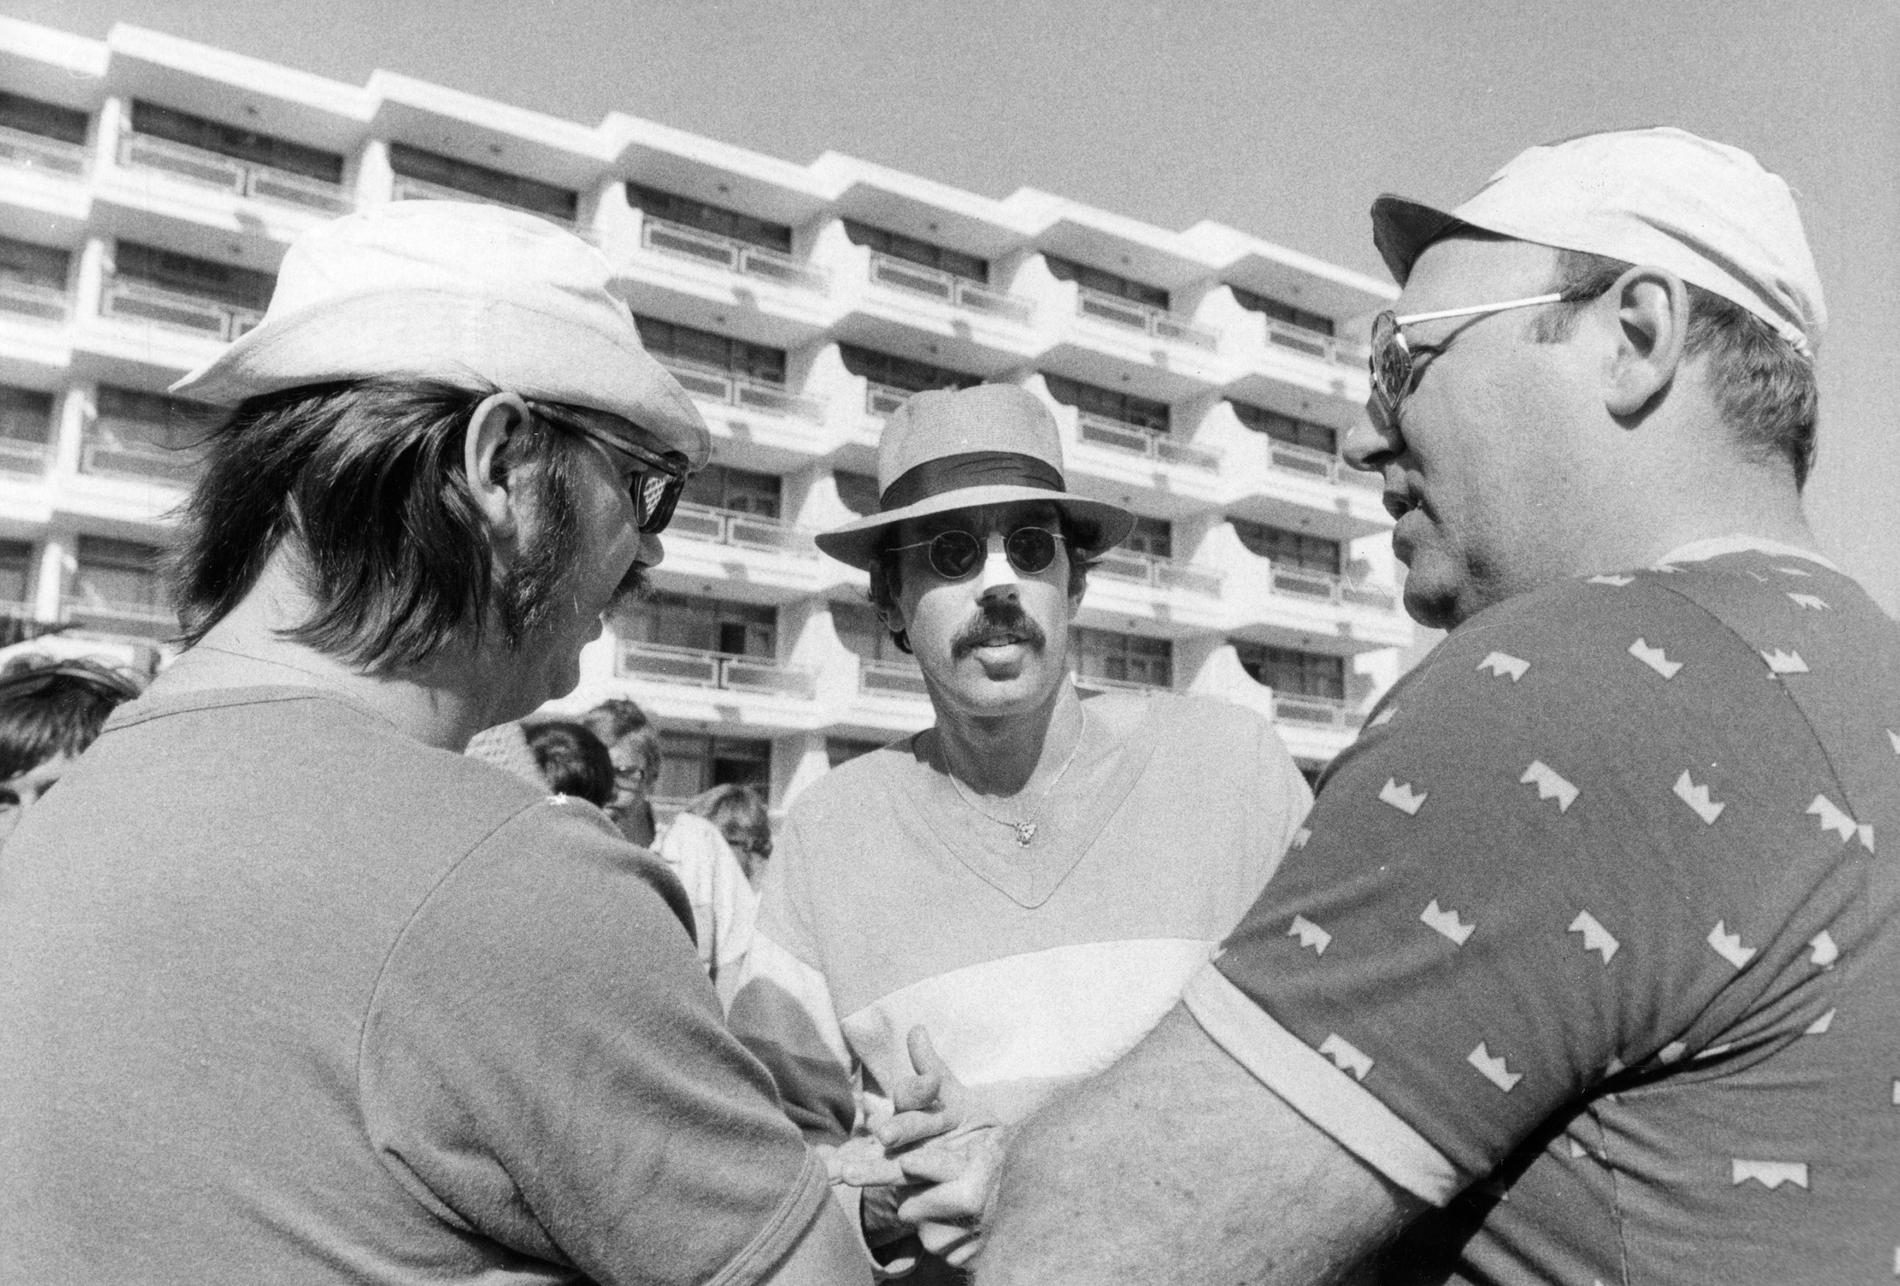 Inspelning av filmen "Sällskapsresan" i San Agustin på Gran Canaria. Från vänster Sven Melander, Lasse Åberg och Weiron Holmberg.